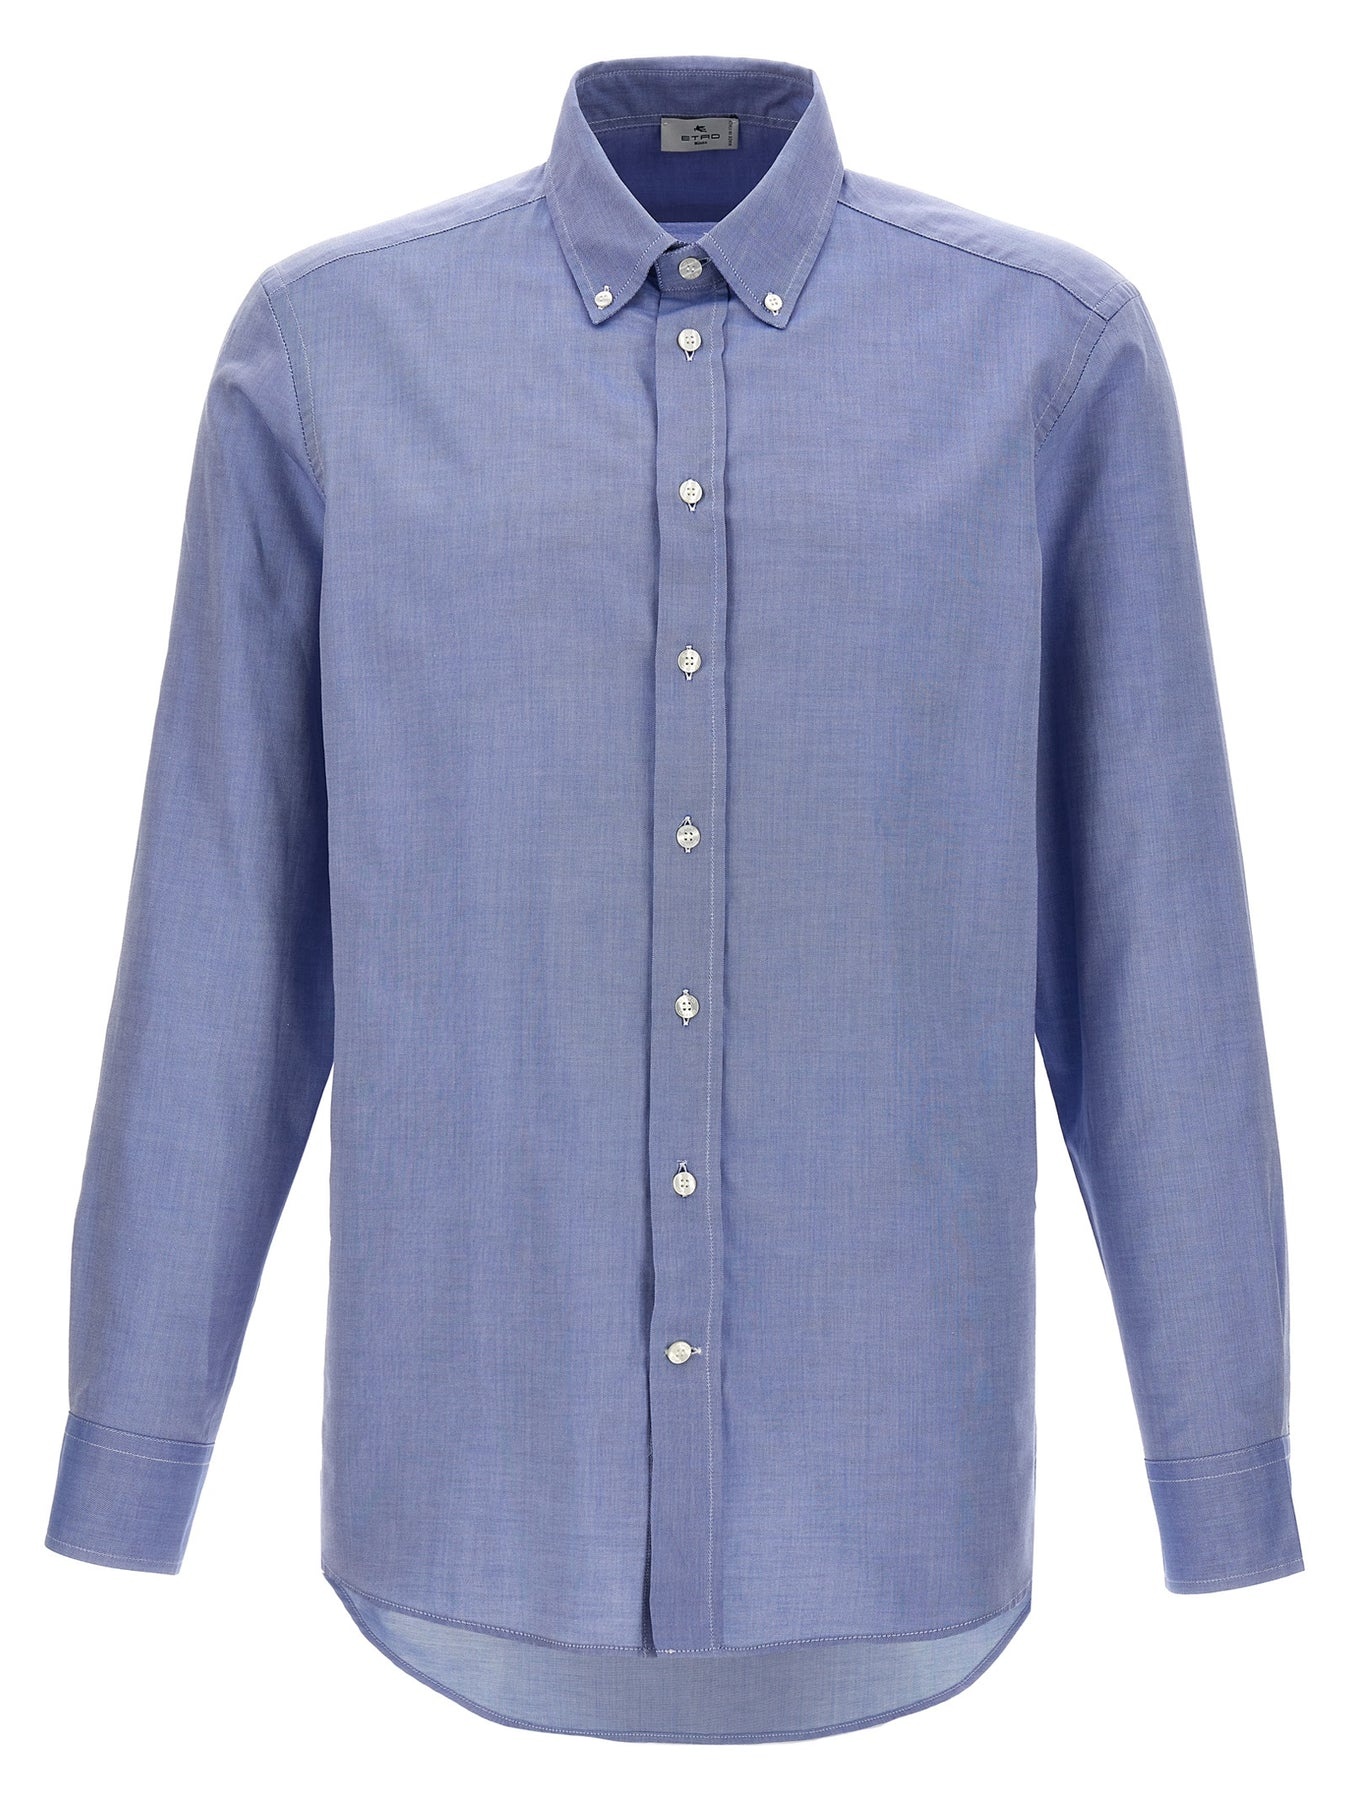 Cotton Shirt Shirt, Blouse Light Blue - 1